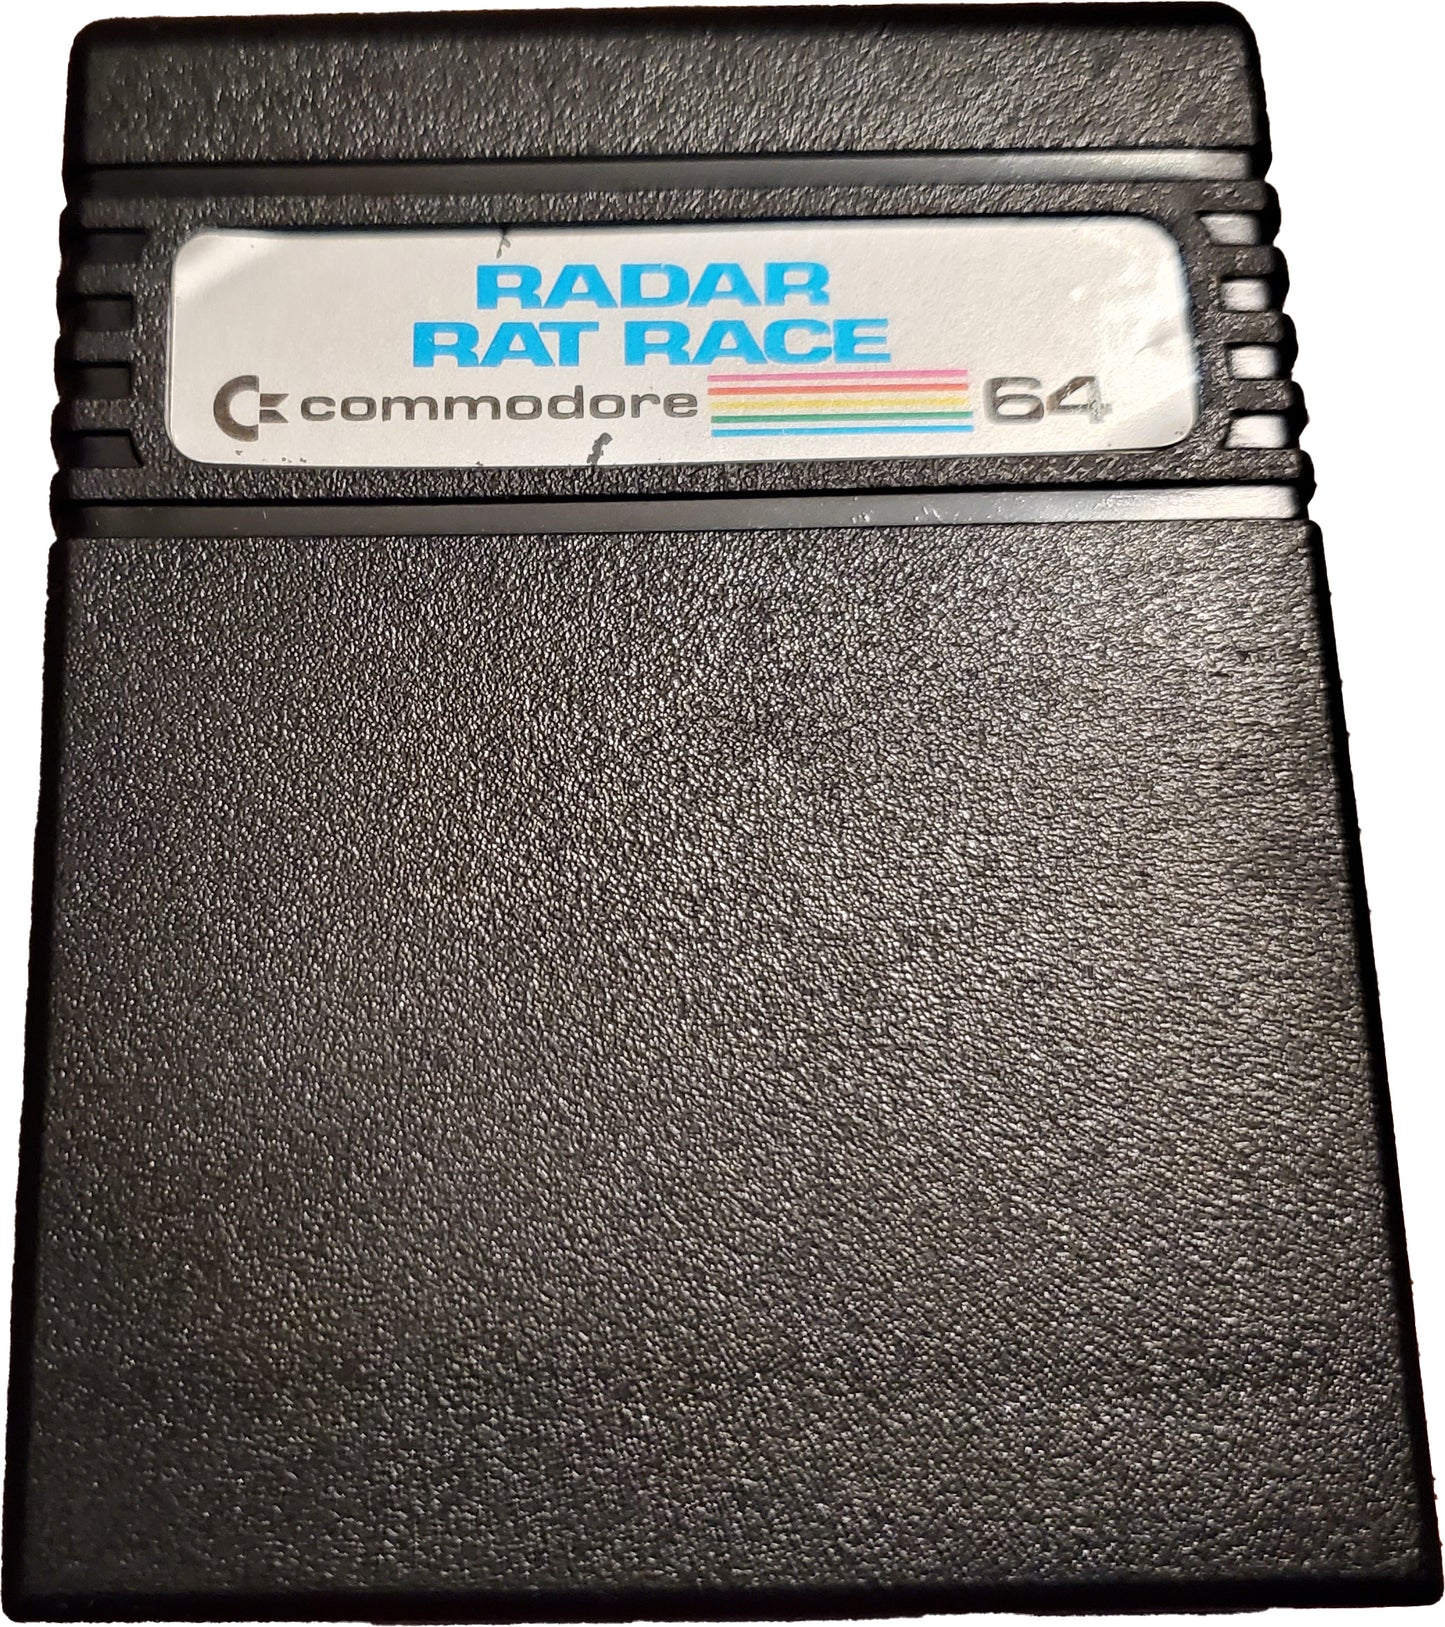 Radar Rat Race Cartridge